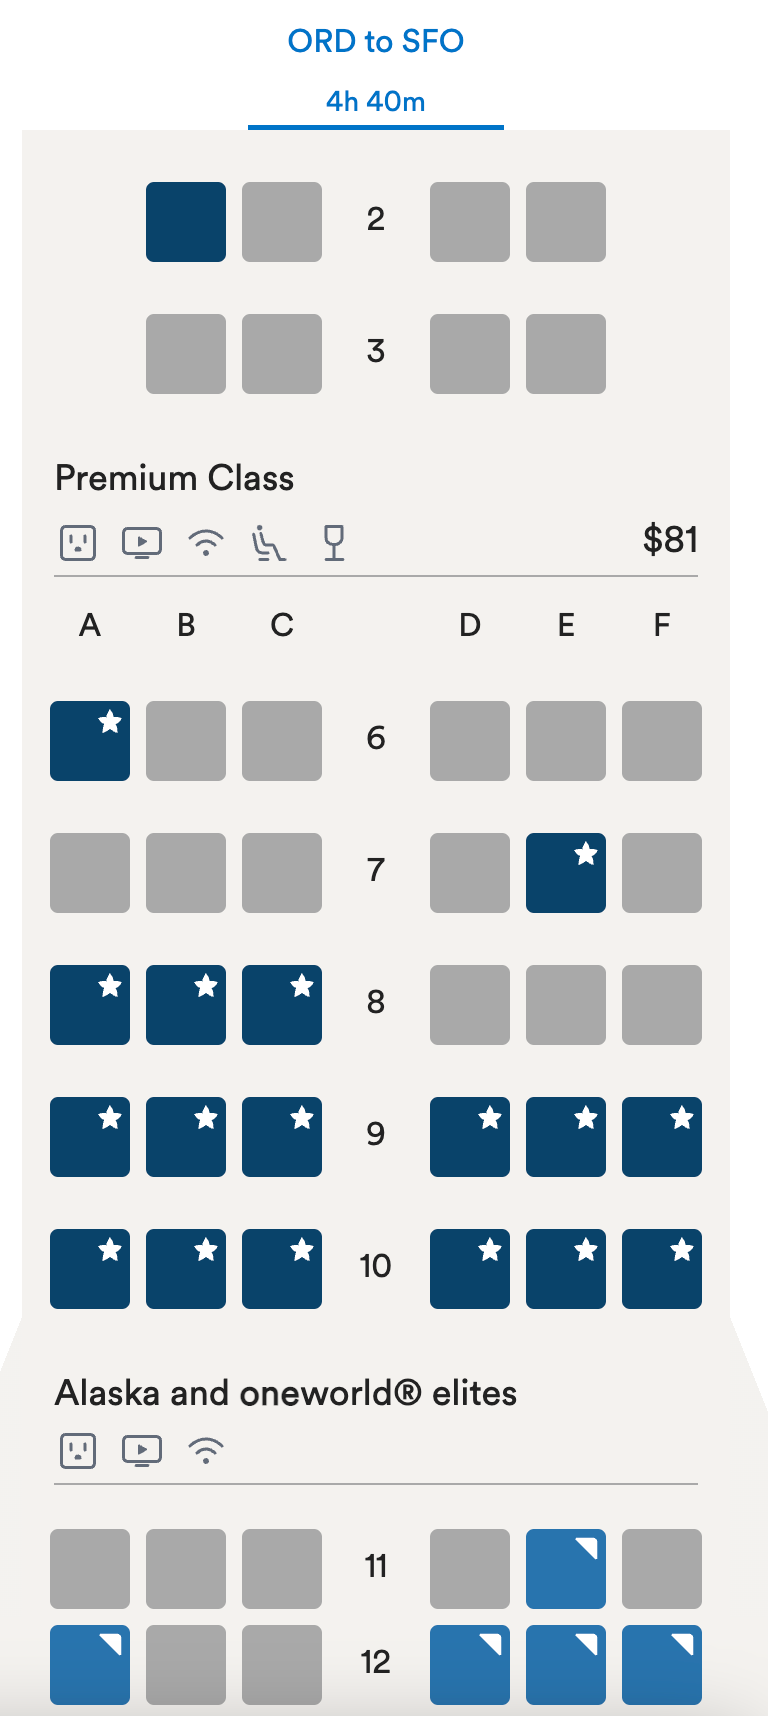 Alaska seat map $81 for premium class